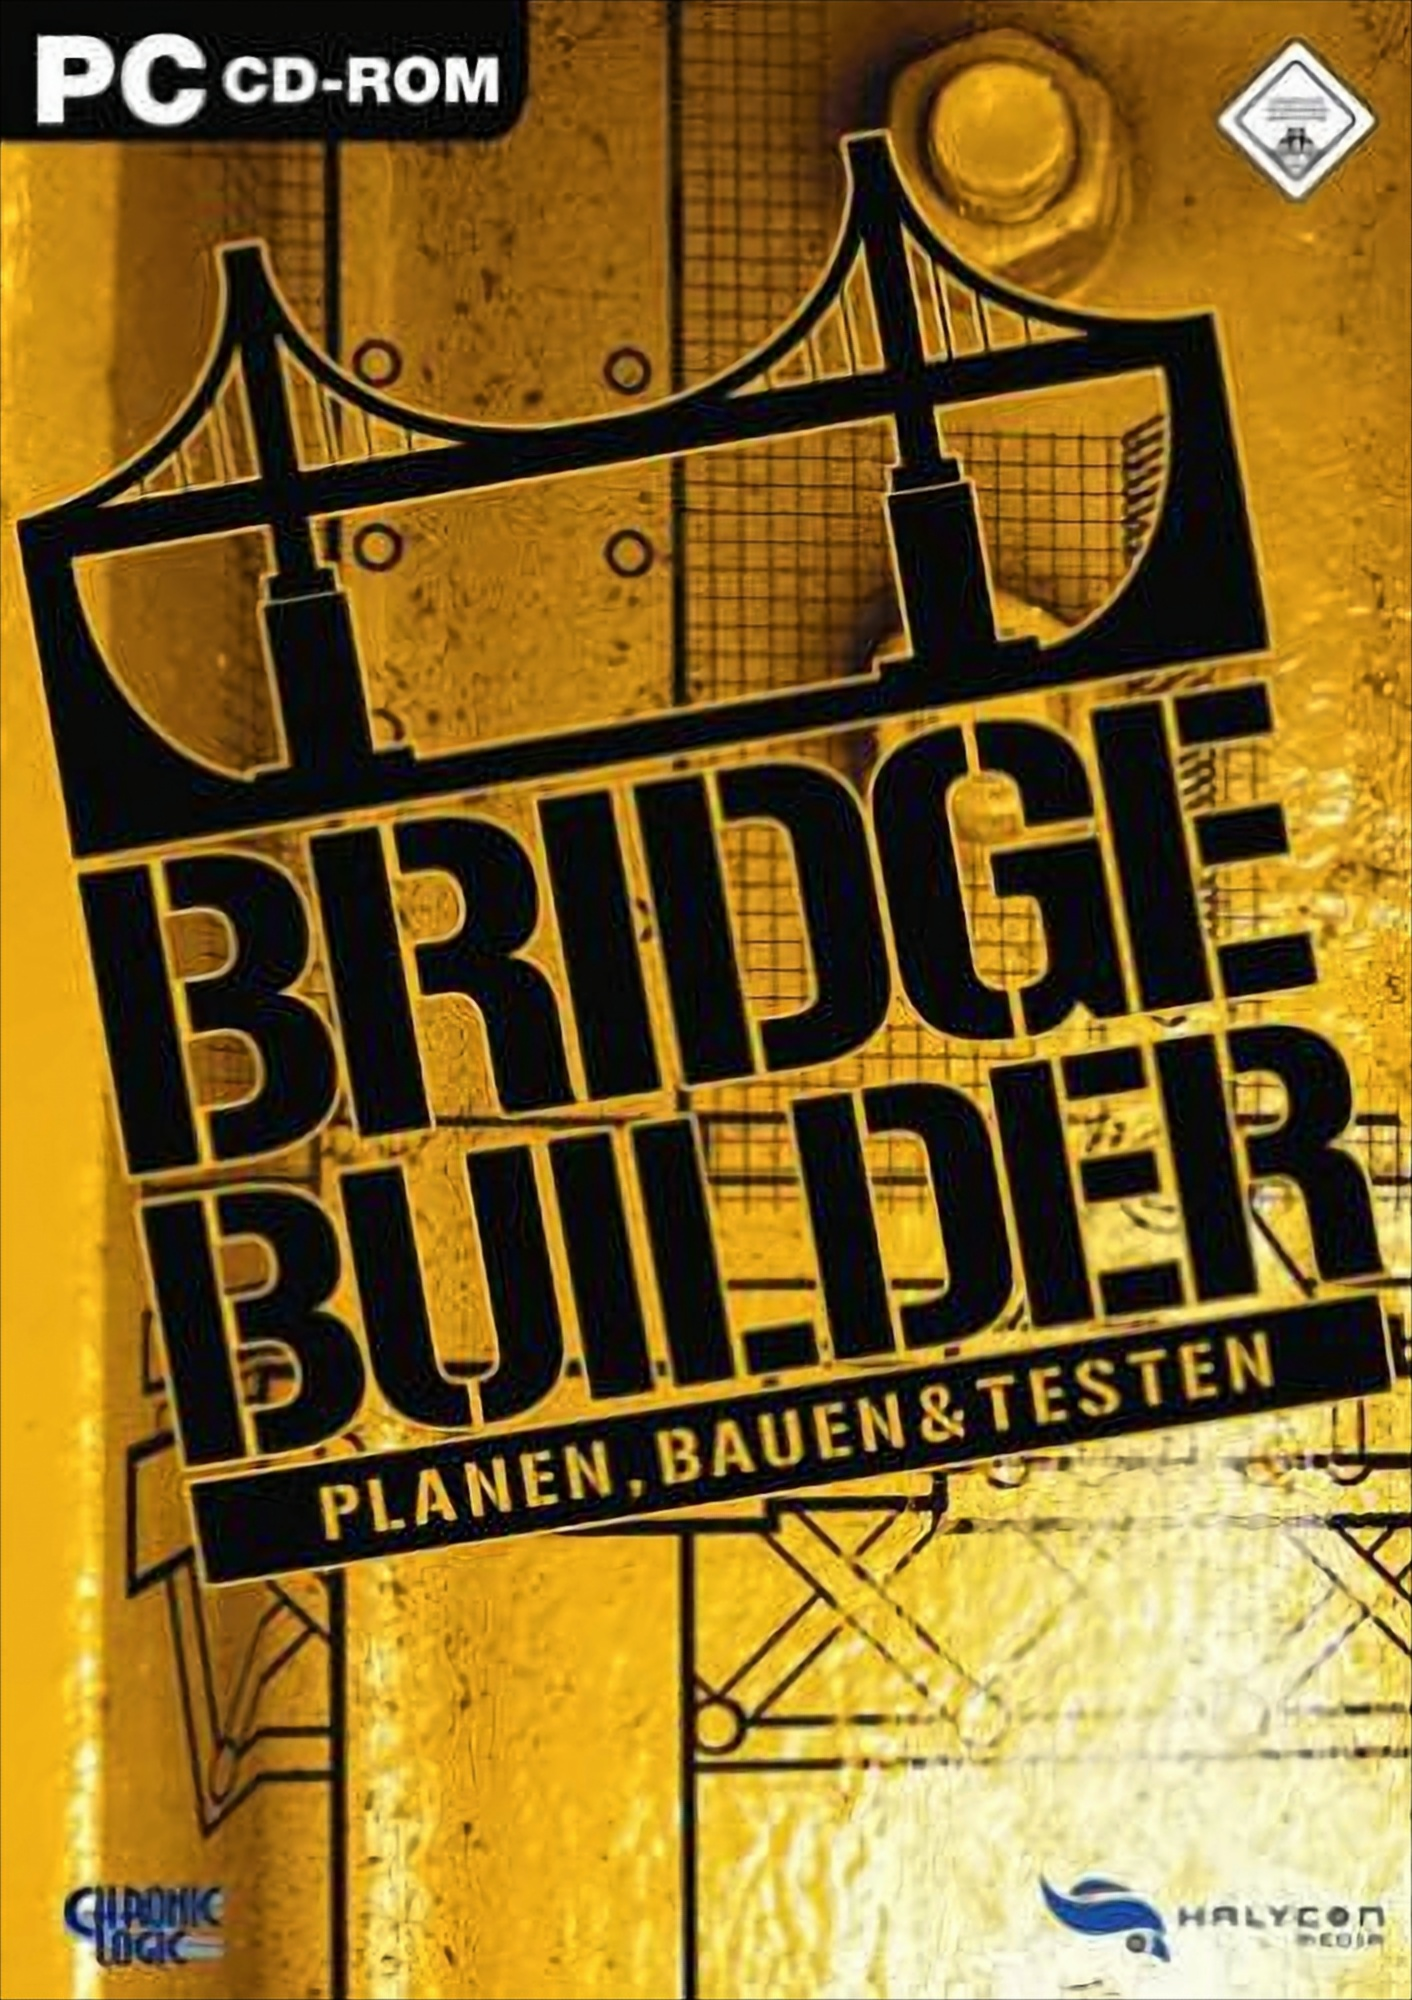 Builder - Bridge [PC]